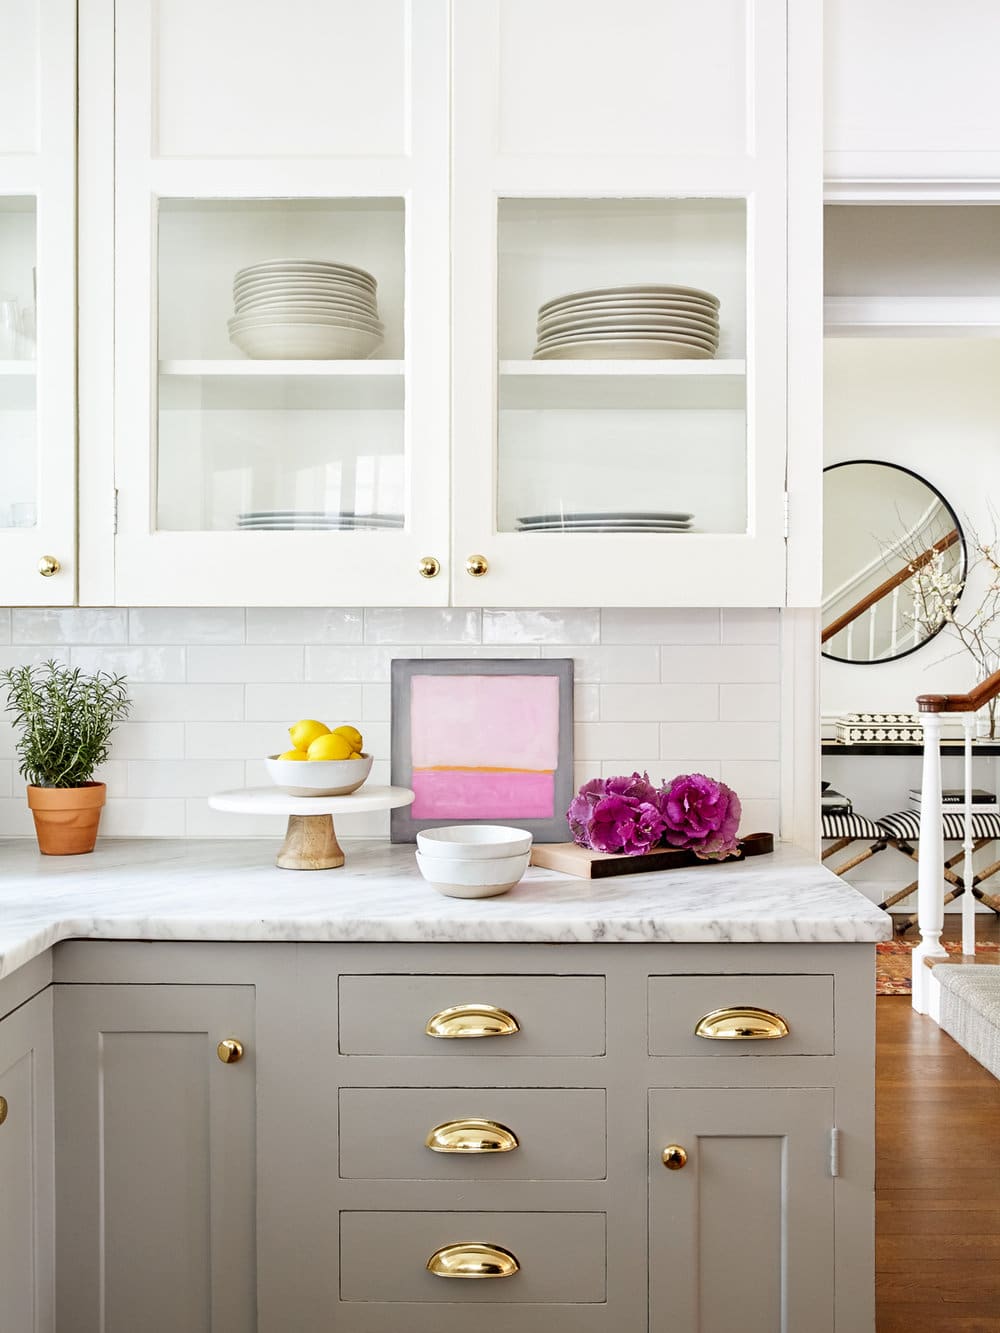 Stephanie Kraus Design - Photography @kylesmithborn - beautiful kitchen gray cabinets with brass hardware - kitchen decor - kitchen design 